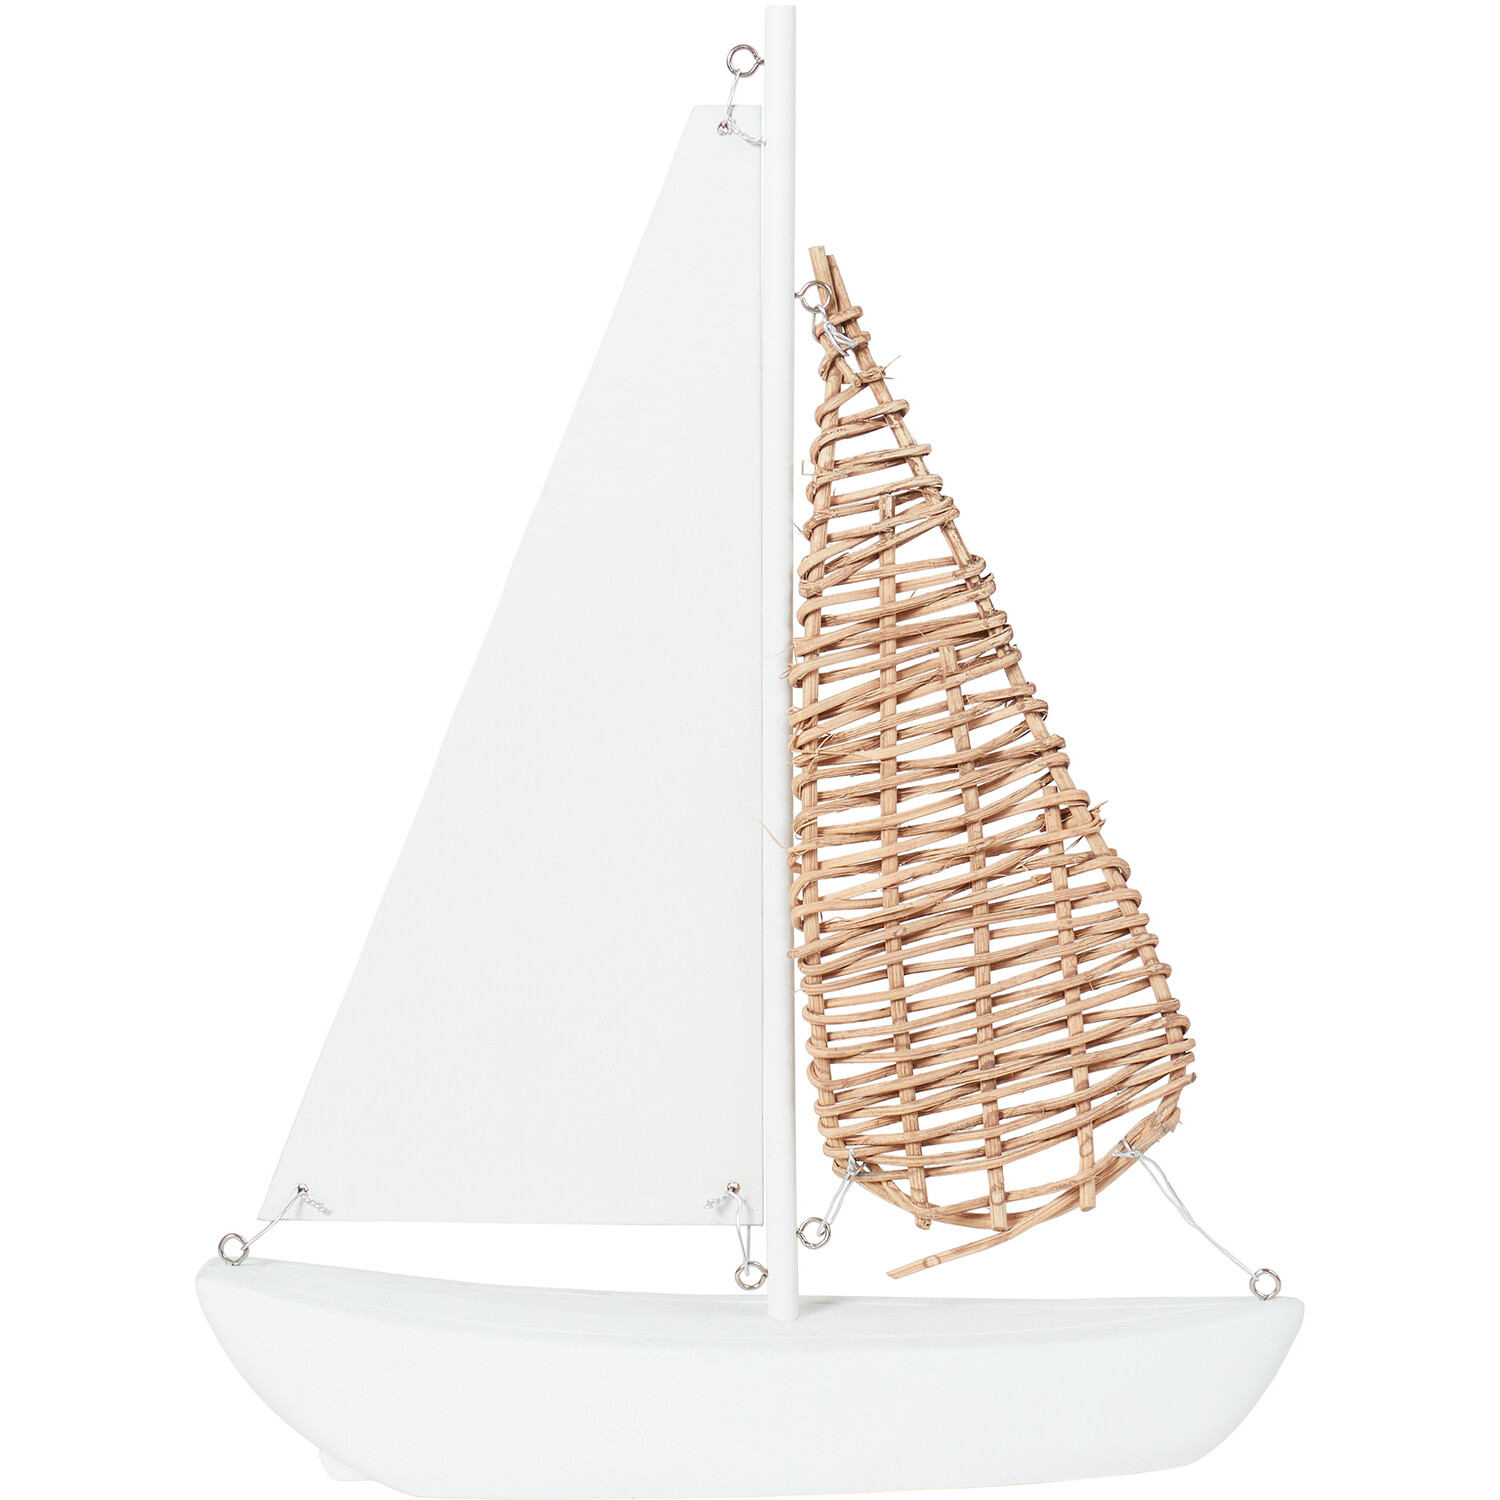 Raffia White Sailboat Ornament Image 1